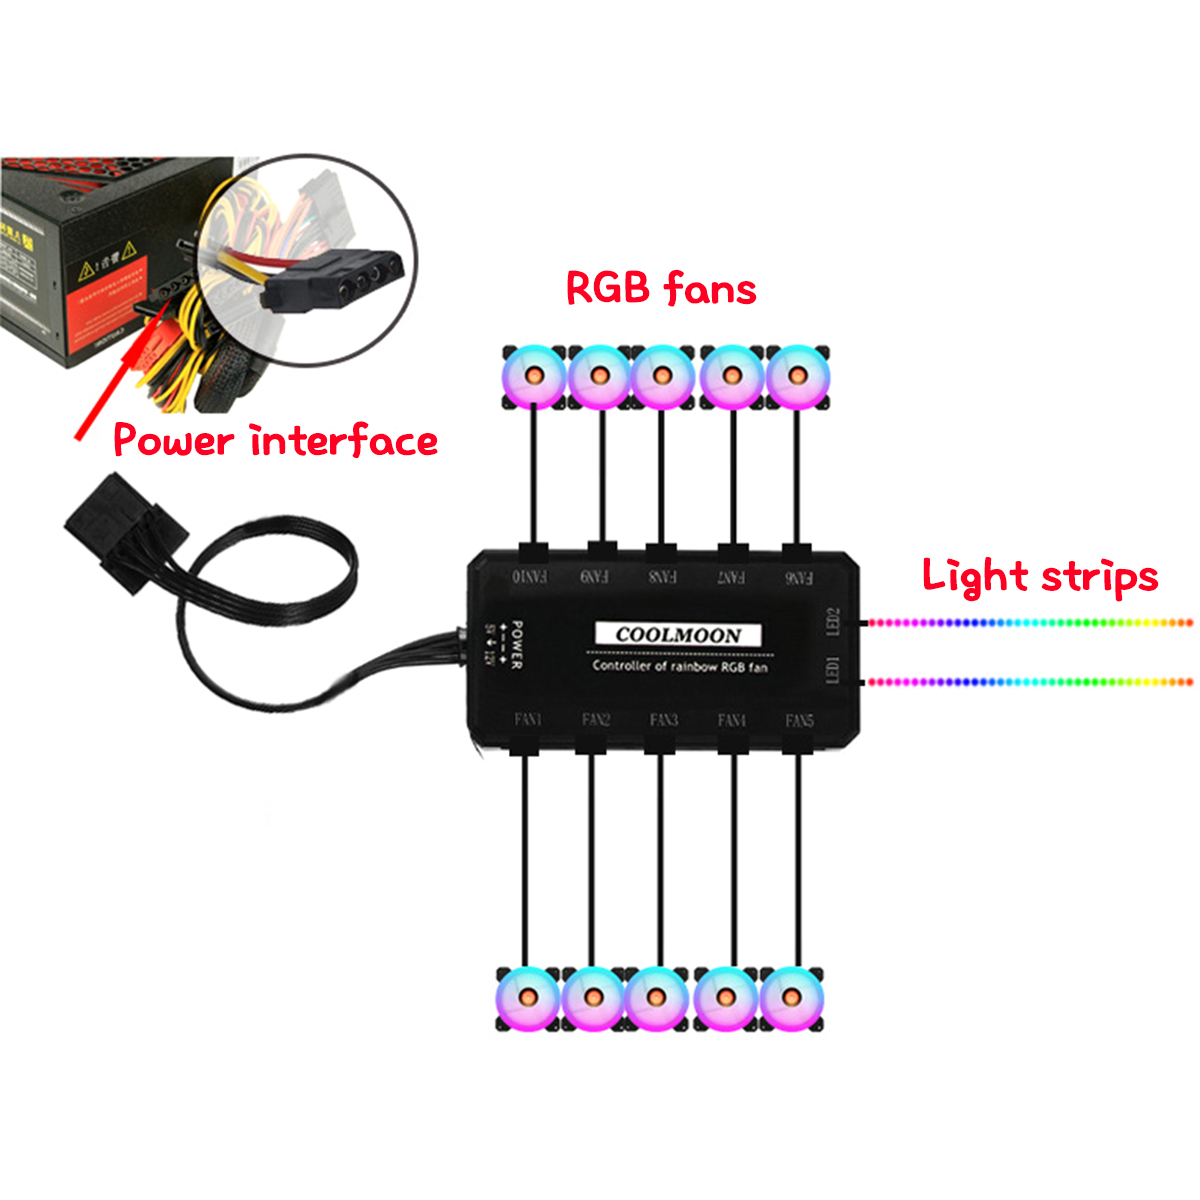 Кулер аргб. RGB контроллер для вентиляторов 4 Pin. Coolmoon RGB контроллер. Контроллер RGB 6 Pin Coolmoon. 3 Пин контроллер для вентиляторов.